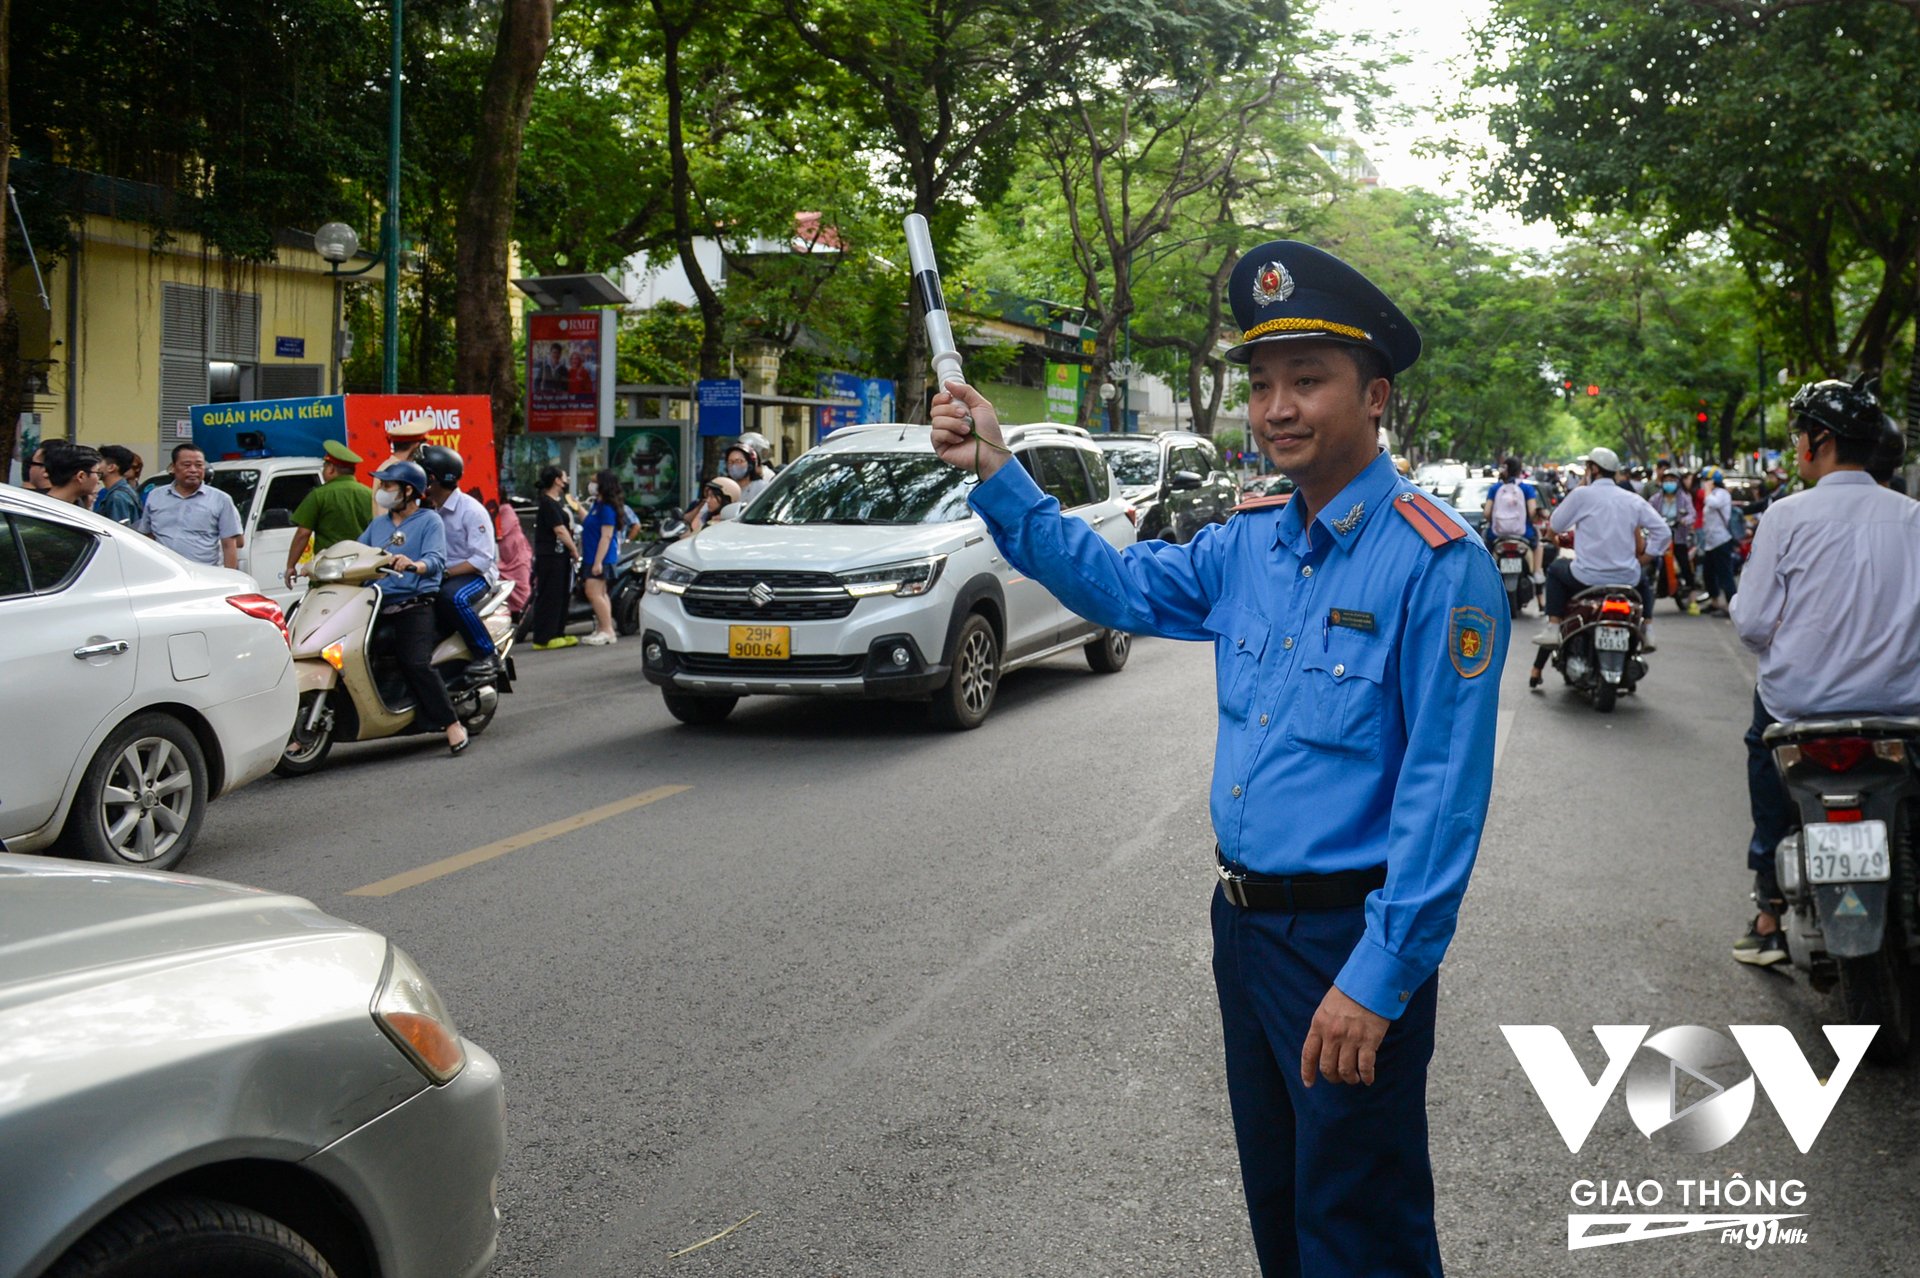 Cùng với lực lượng CSGT còn có lực lượng Thanh tra Sở Giao thông Vận tải Hà Nội và các lực lượng khác phối hợp phân luồng, đảm bảo an toàn giao thông.